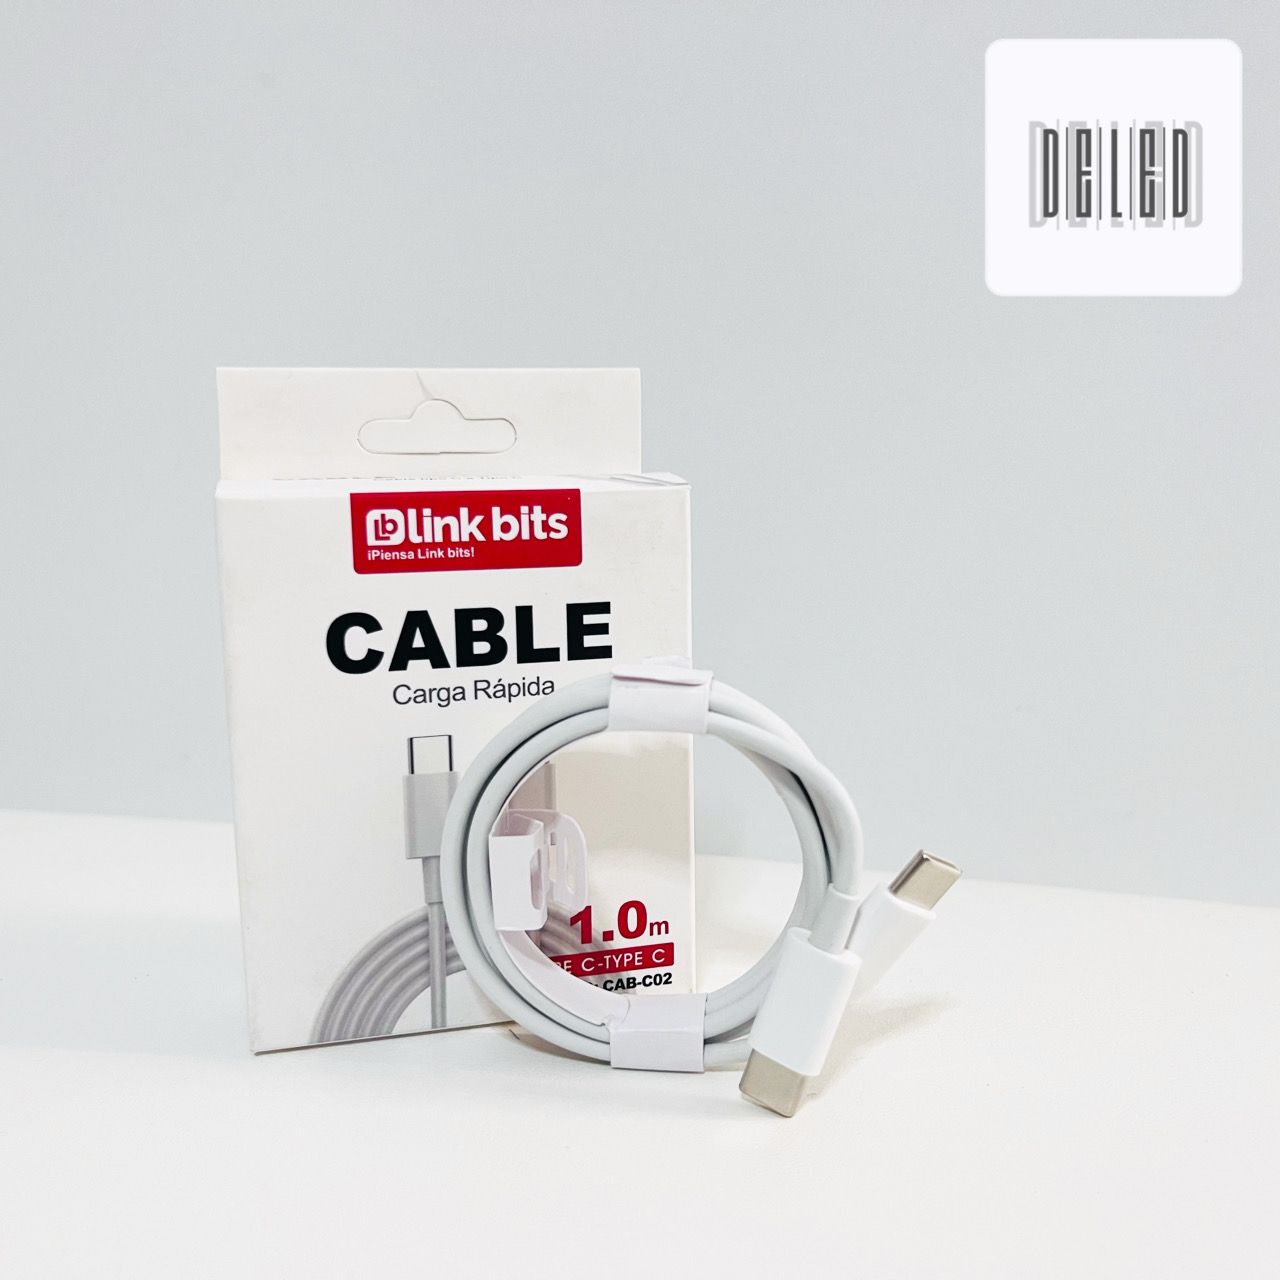 Cable Cargador USB Tipo C a Tipo C Carga Rápida LINK BITS DC-229/TYPE- –  DELED Electronica y Accesorios